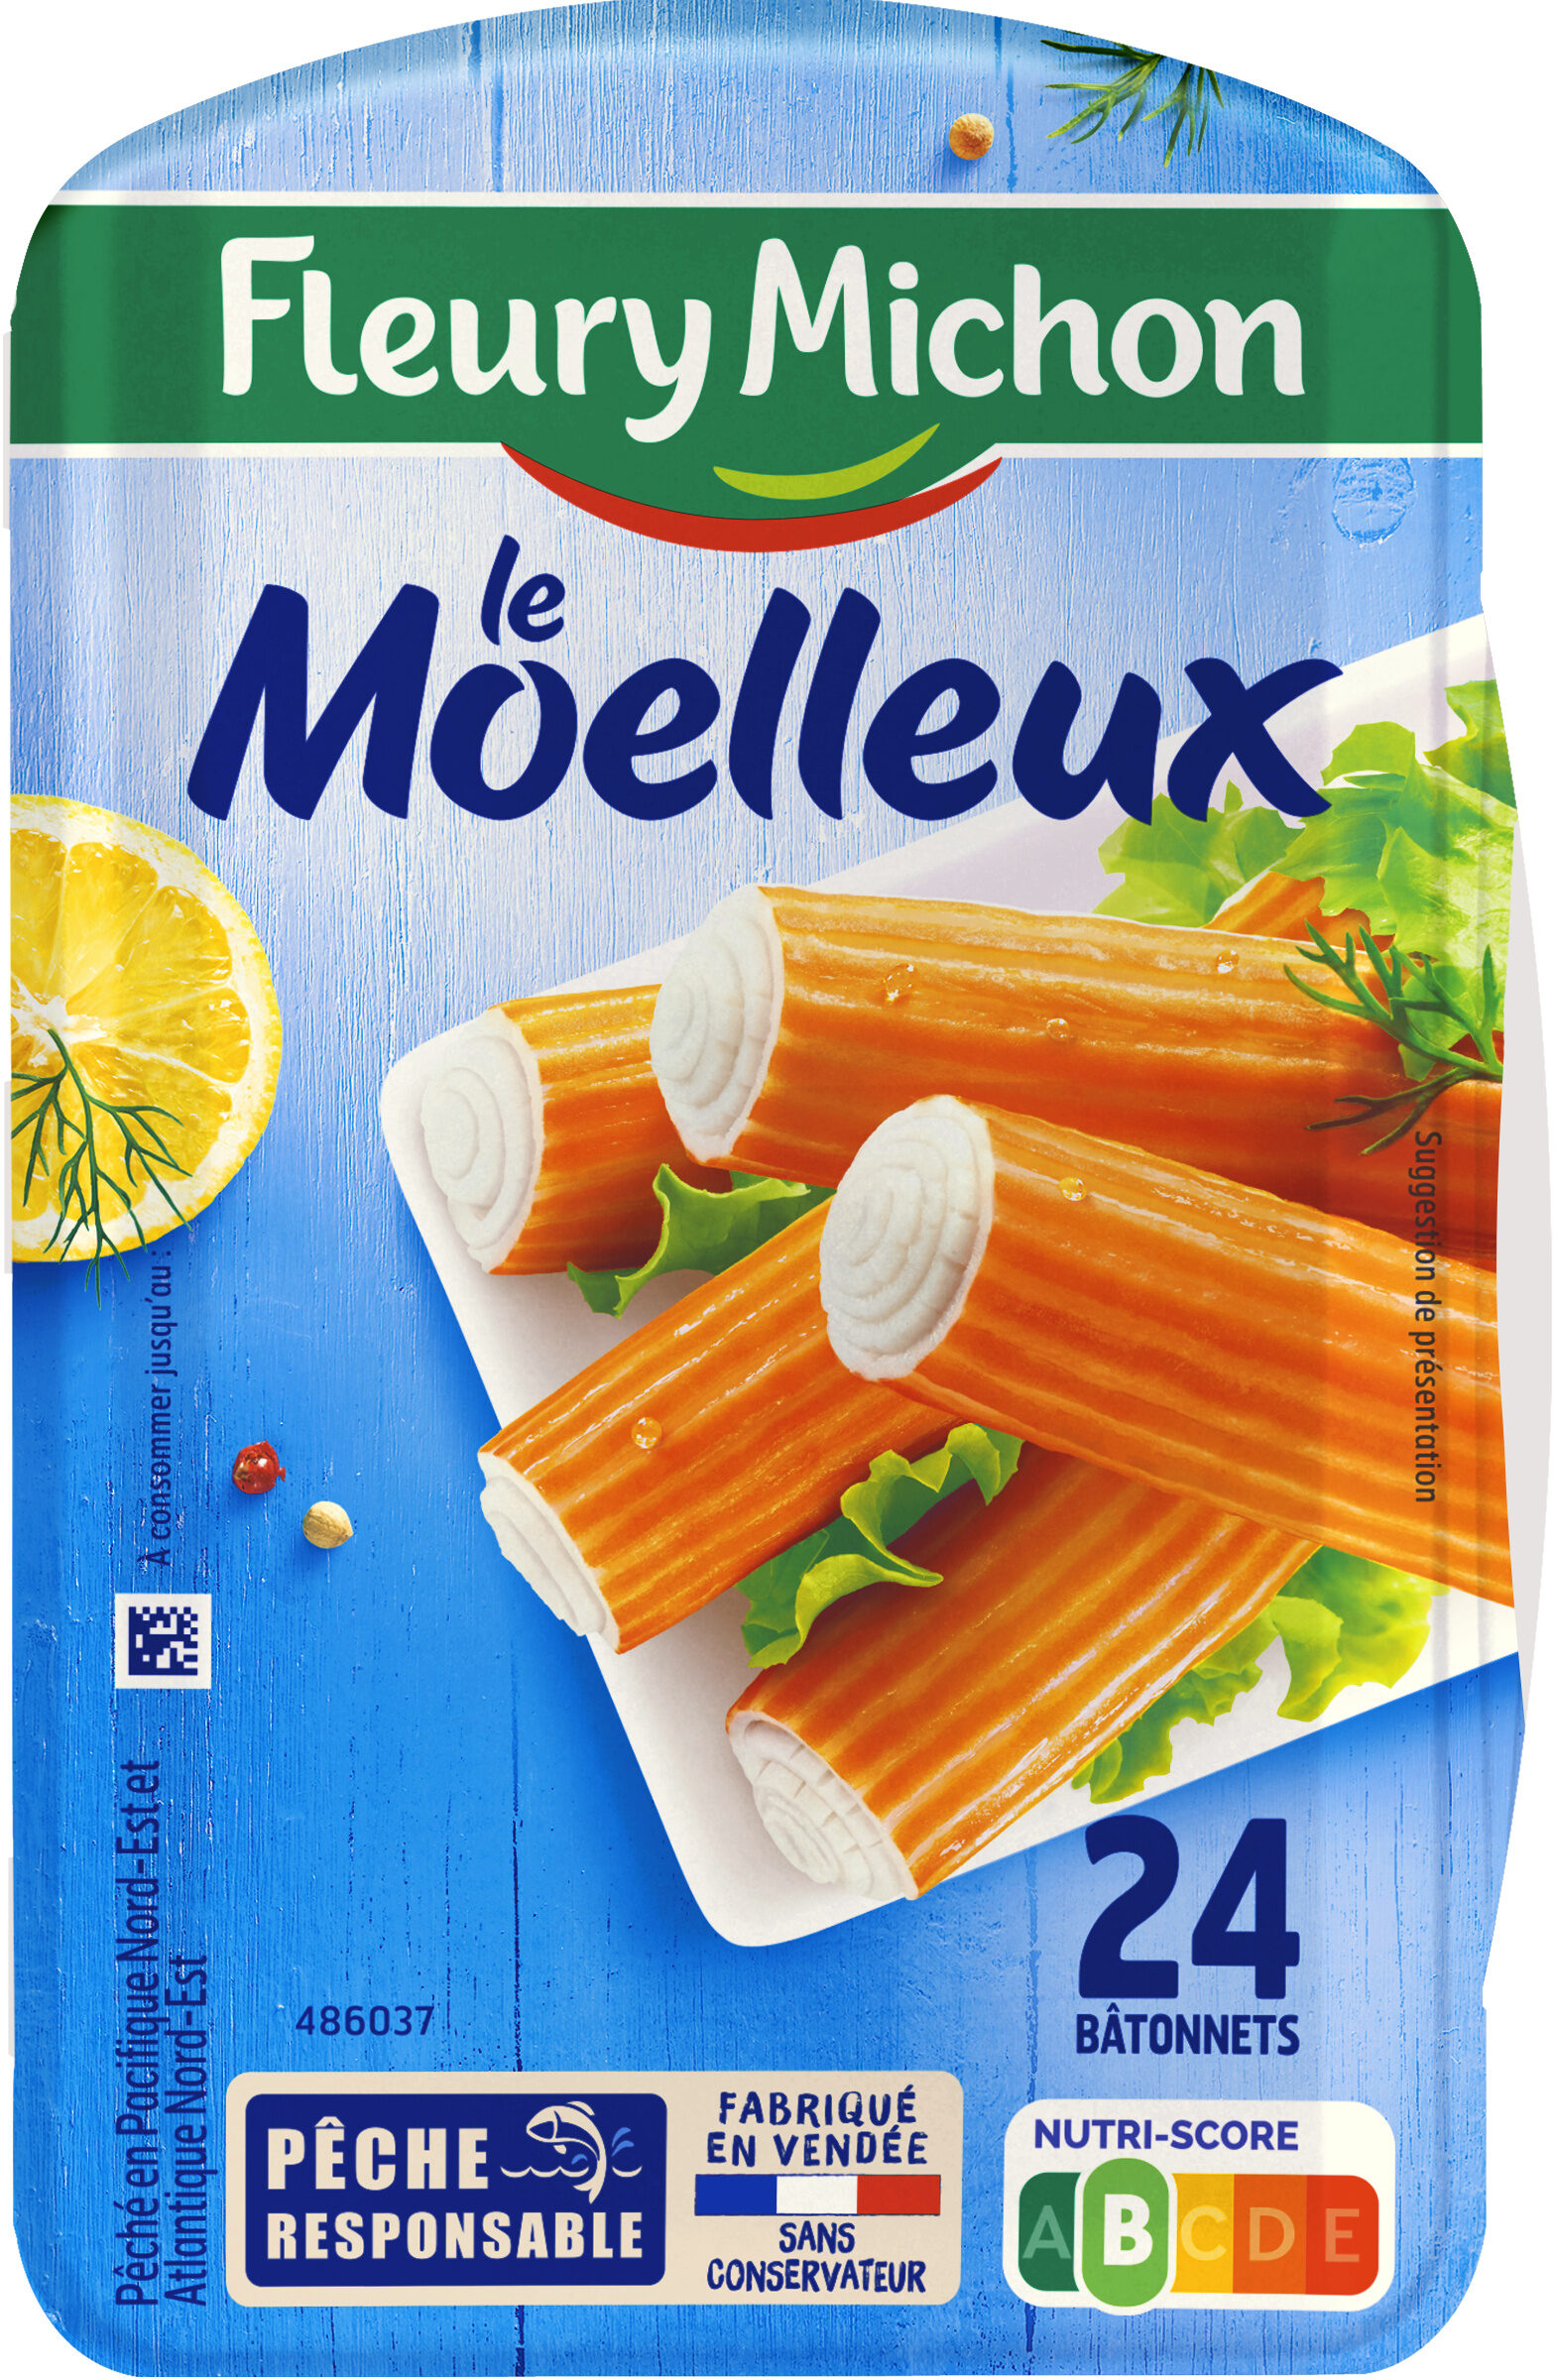 Le Moelleux - نتاج - fr